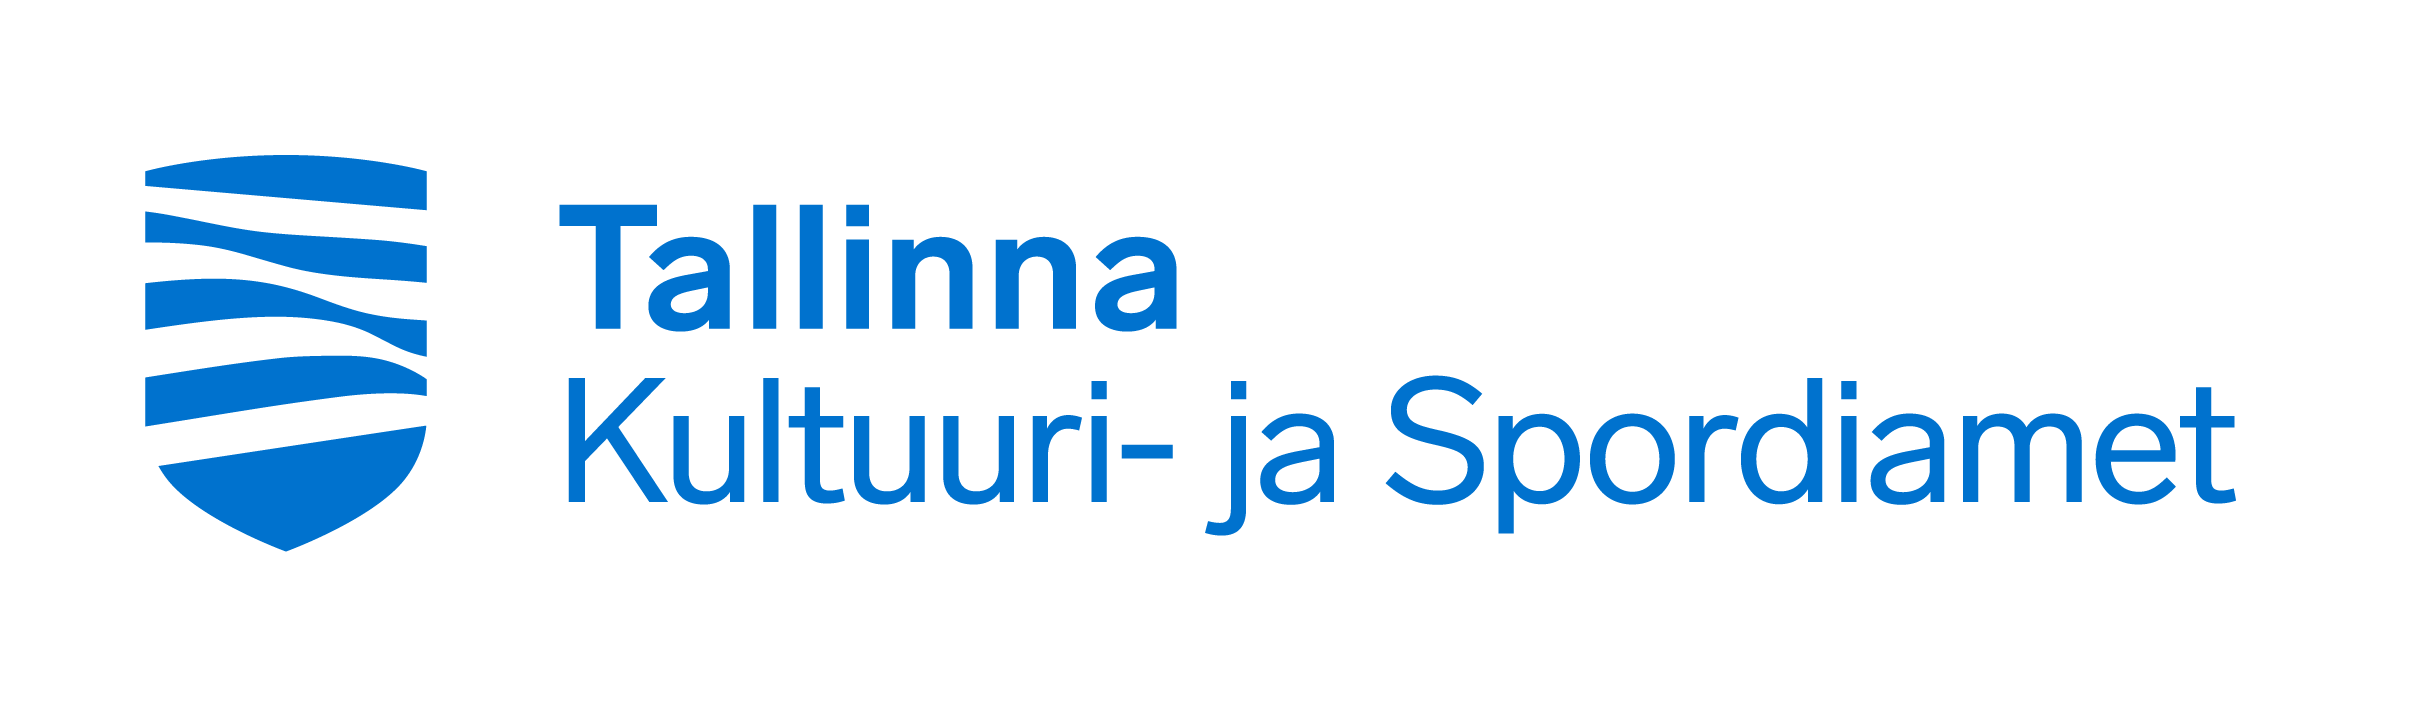 Tallinna Kultuuri- ja Spordiamet